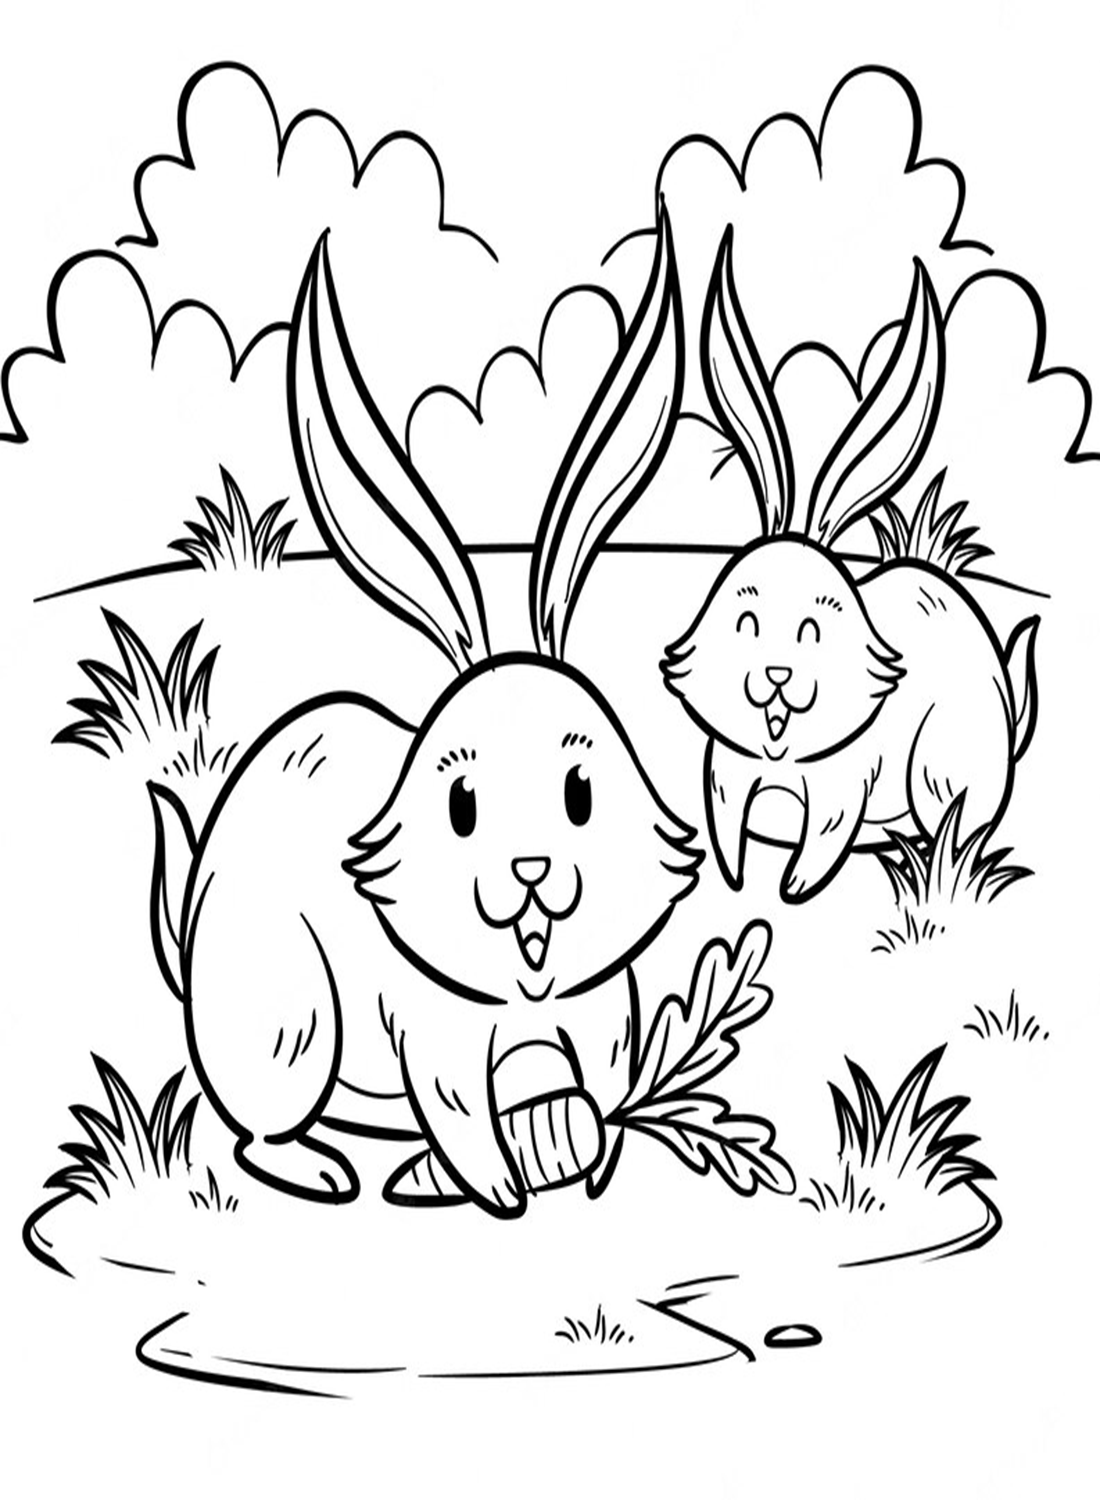 أرنبان يلعبان على العشب من الأرنب